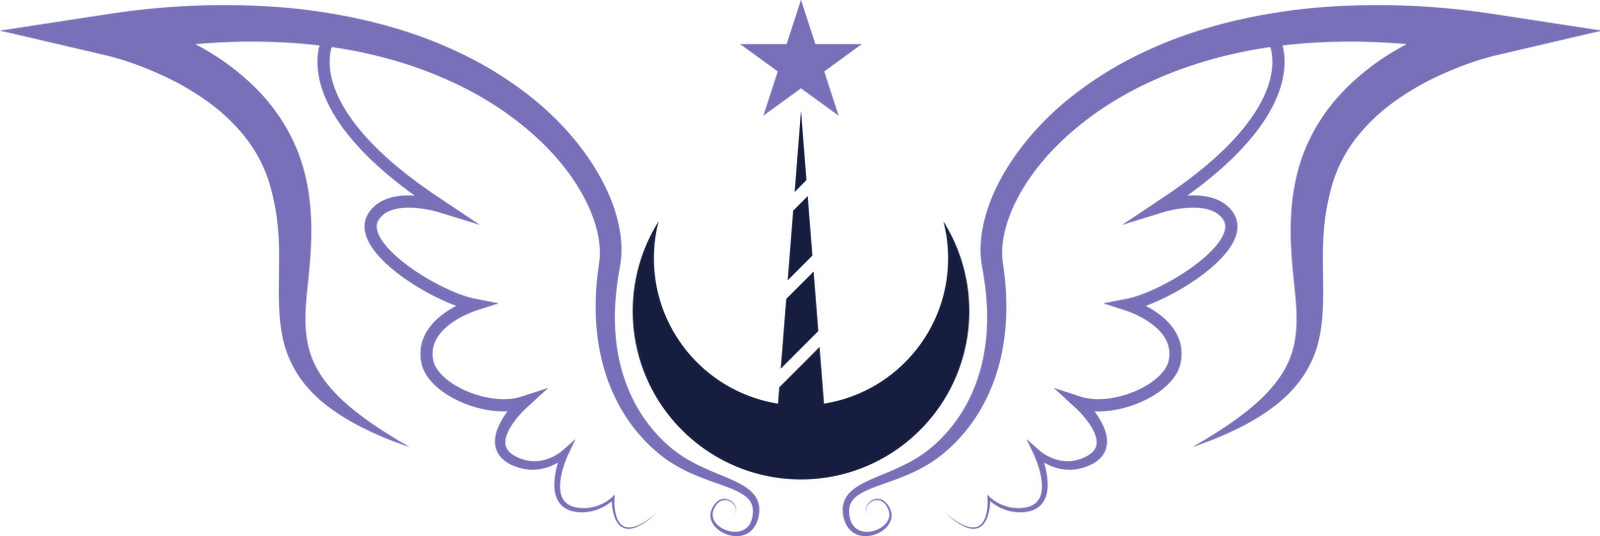 New Lunar Republic Emblem [VIP]